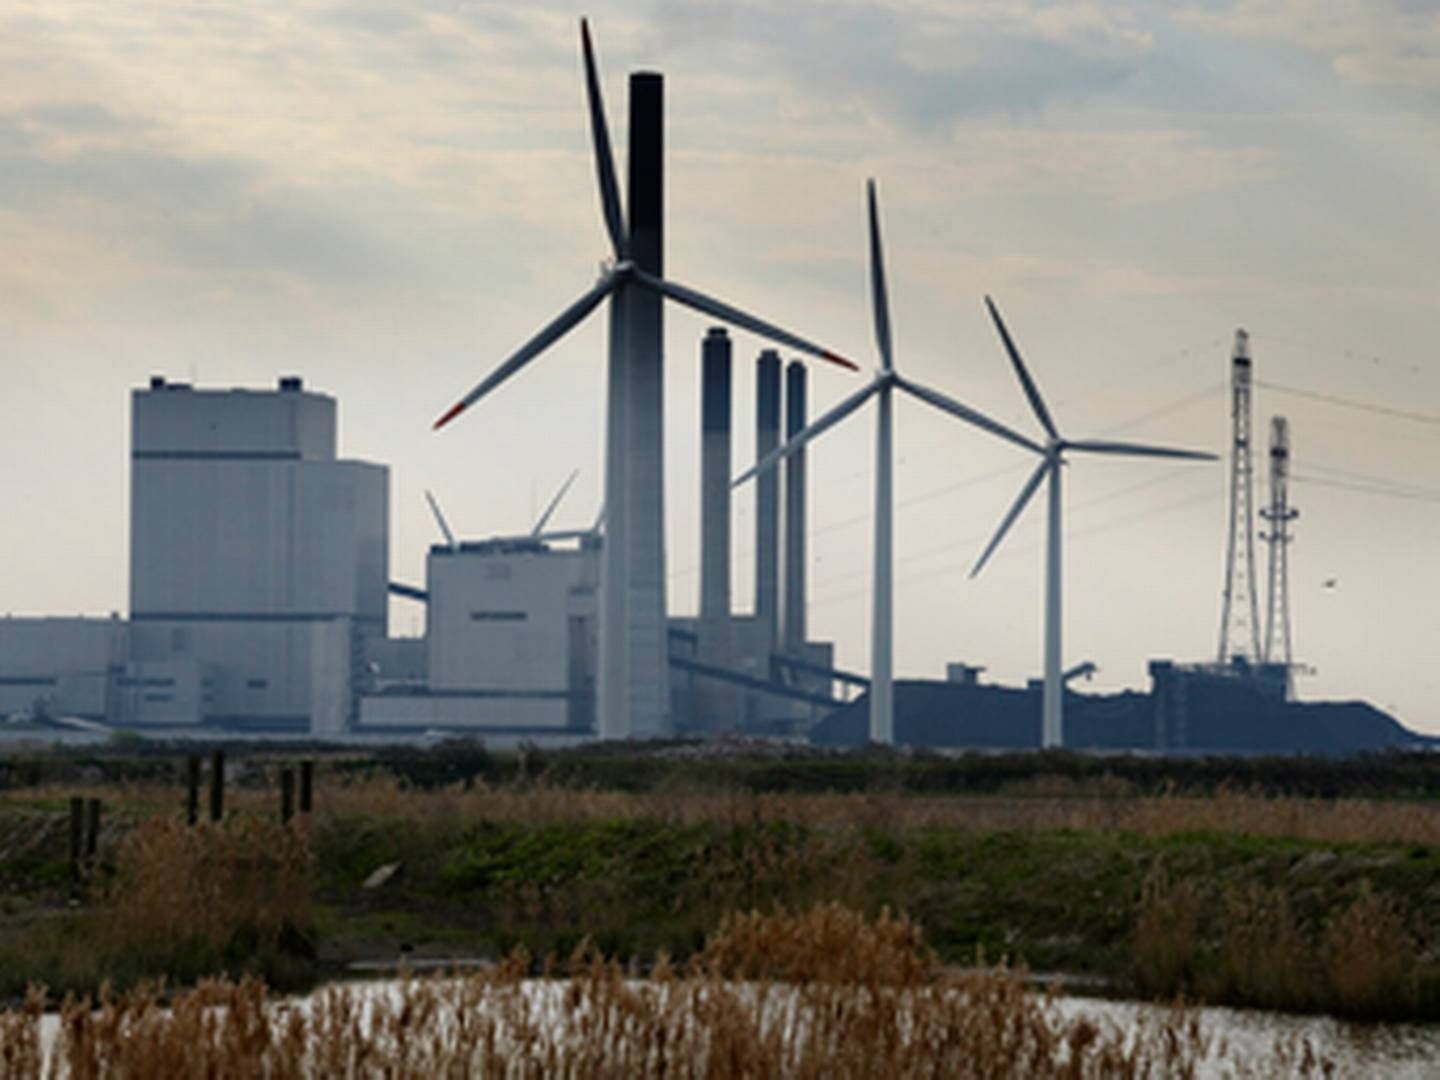 Dansk teknologi inden for blandt andet vind- og kulkraft er i høj kurs i Tyskland. På billedet ses vindmøller foran Nordjyllandsværket. | Foto: VATTENFALL